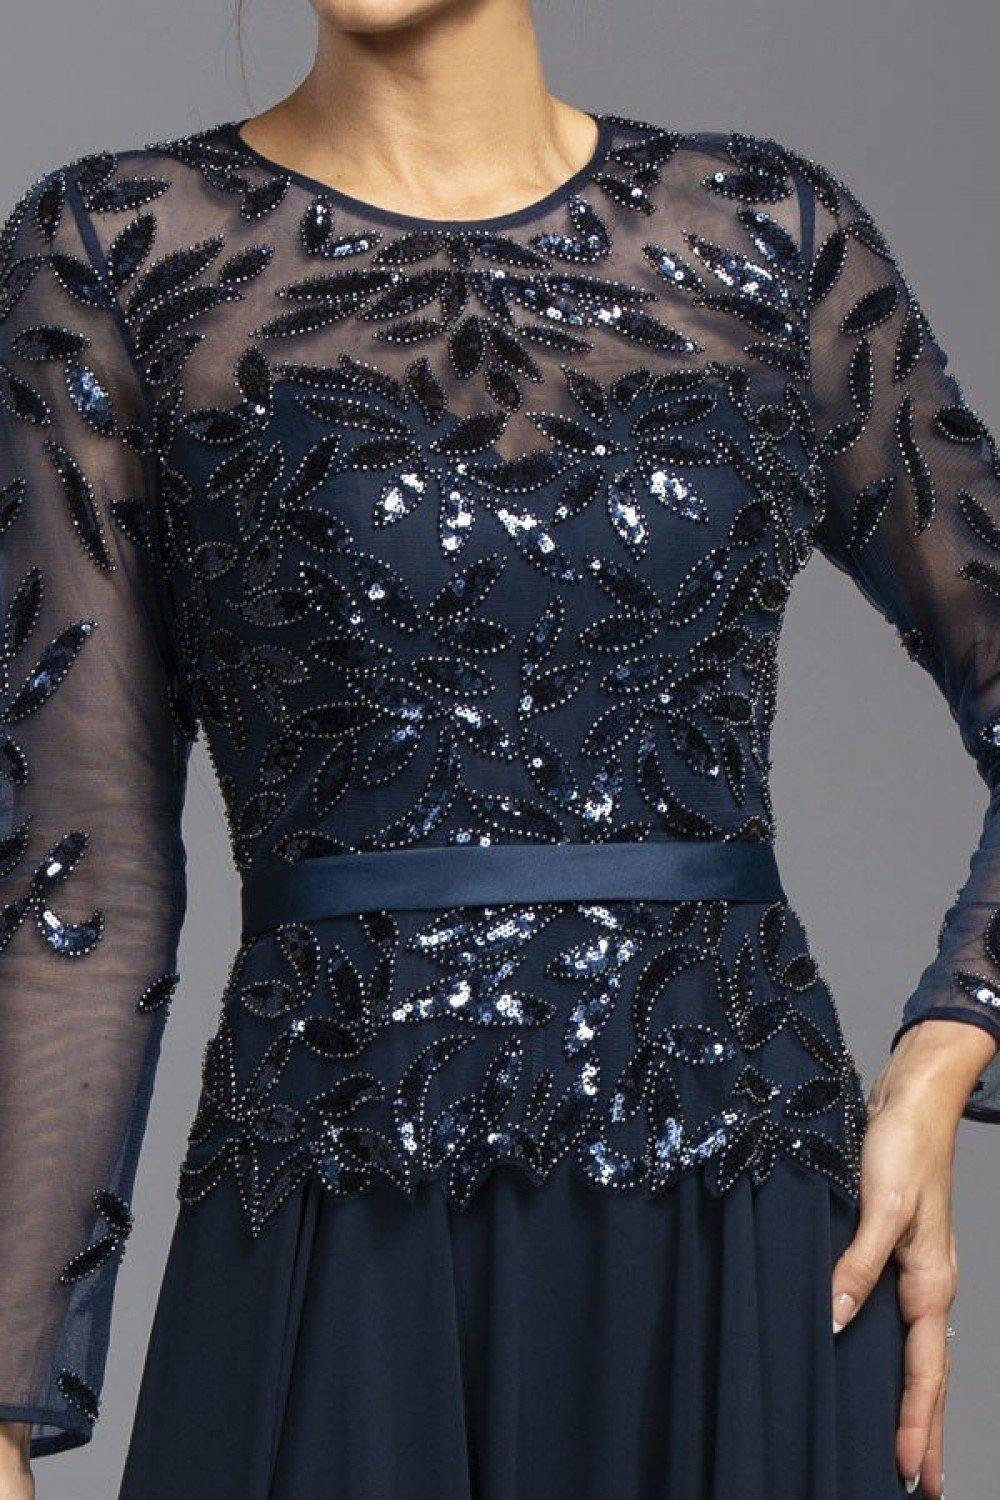 Sequin Embellished Long Formal Dress - The Dress Outlet ASpeed